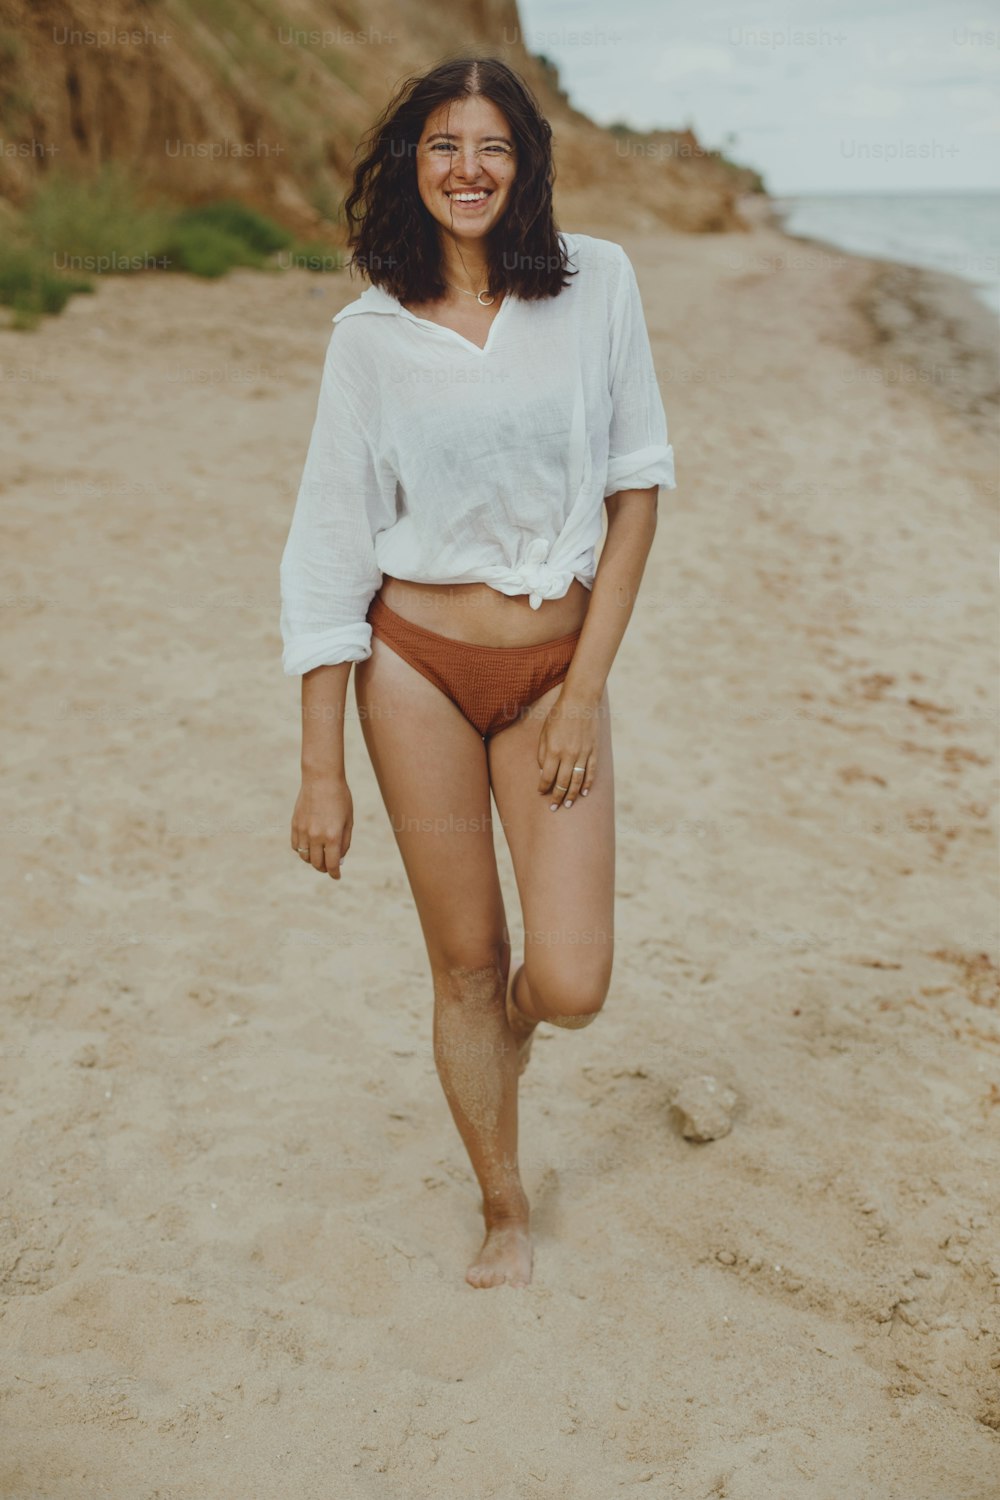 Chica boho feliz con camisa blanca caminando en la playa soleada. Mujer despreocupada y elegante en traje de baño y camisa relajándose en la orilla del mar. Veraneo. Estilo de vida imagen auténtica